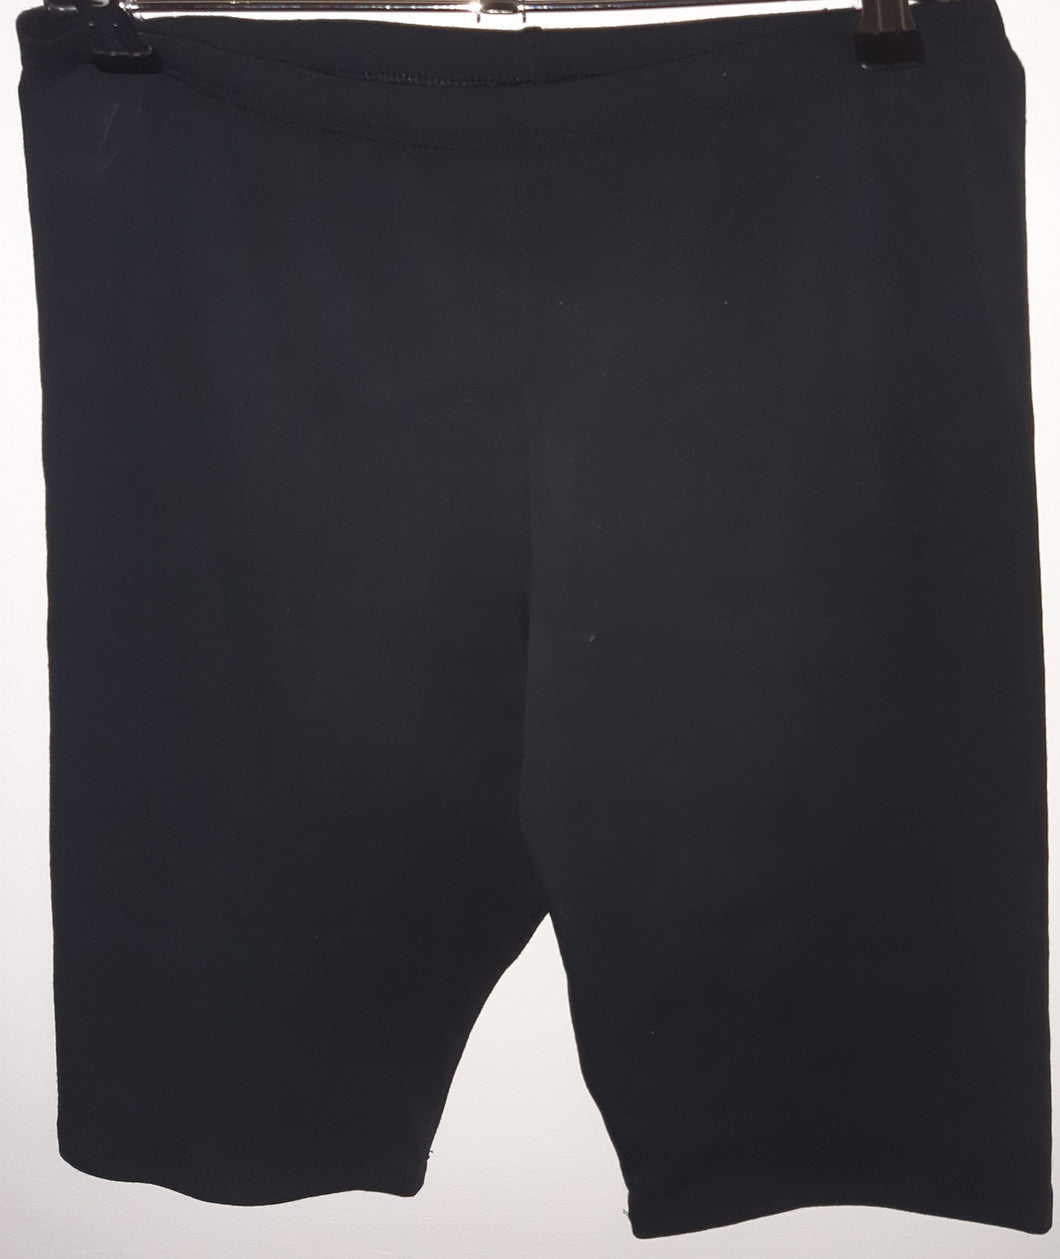 Jenetex men's black cotton shorts